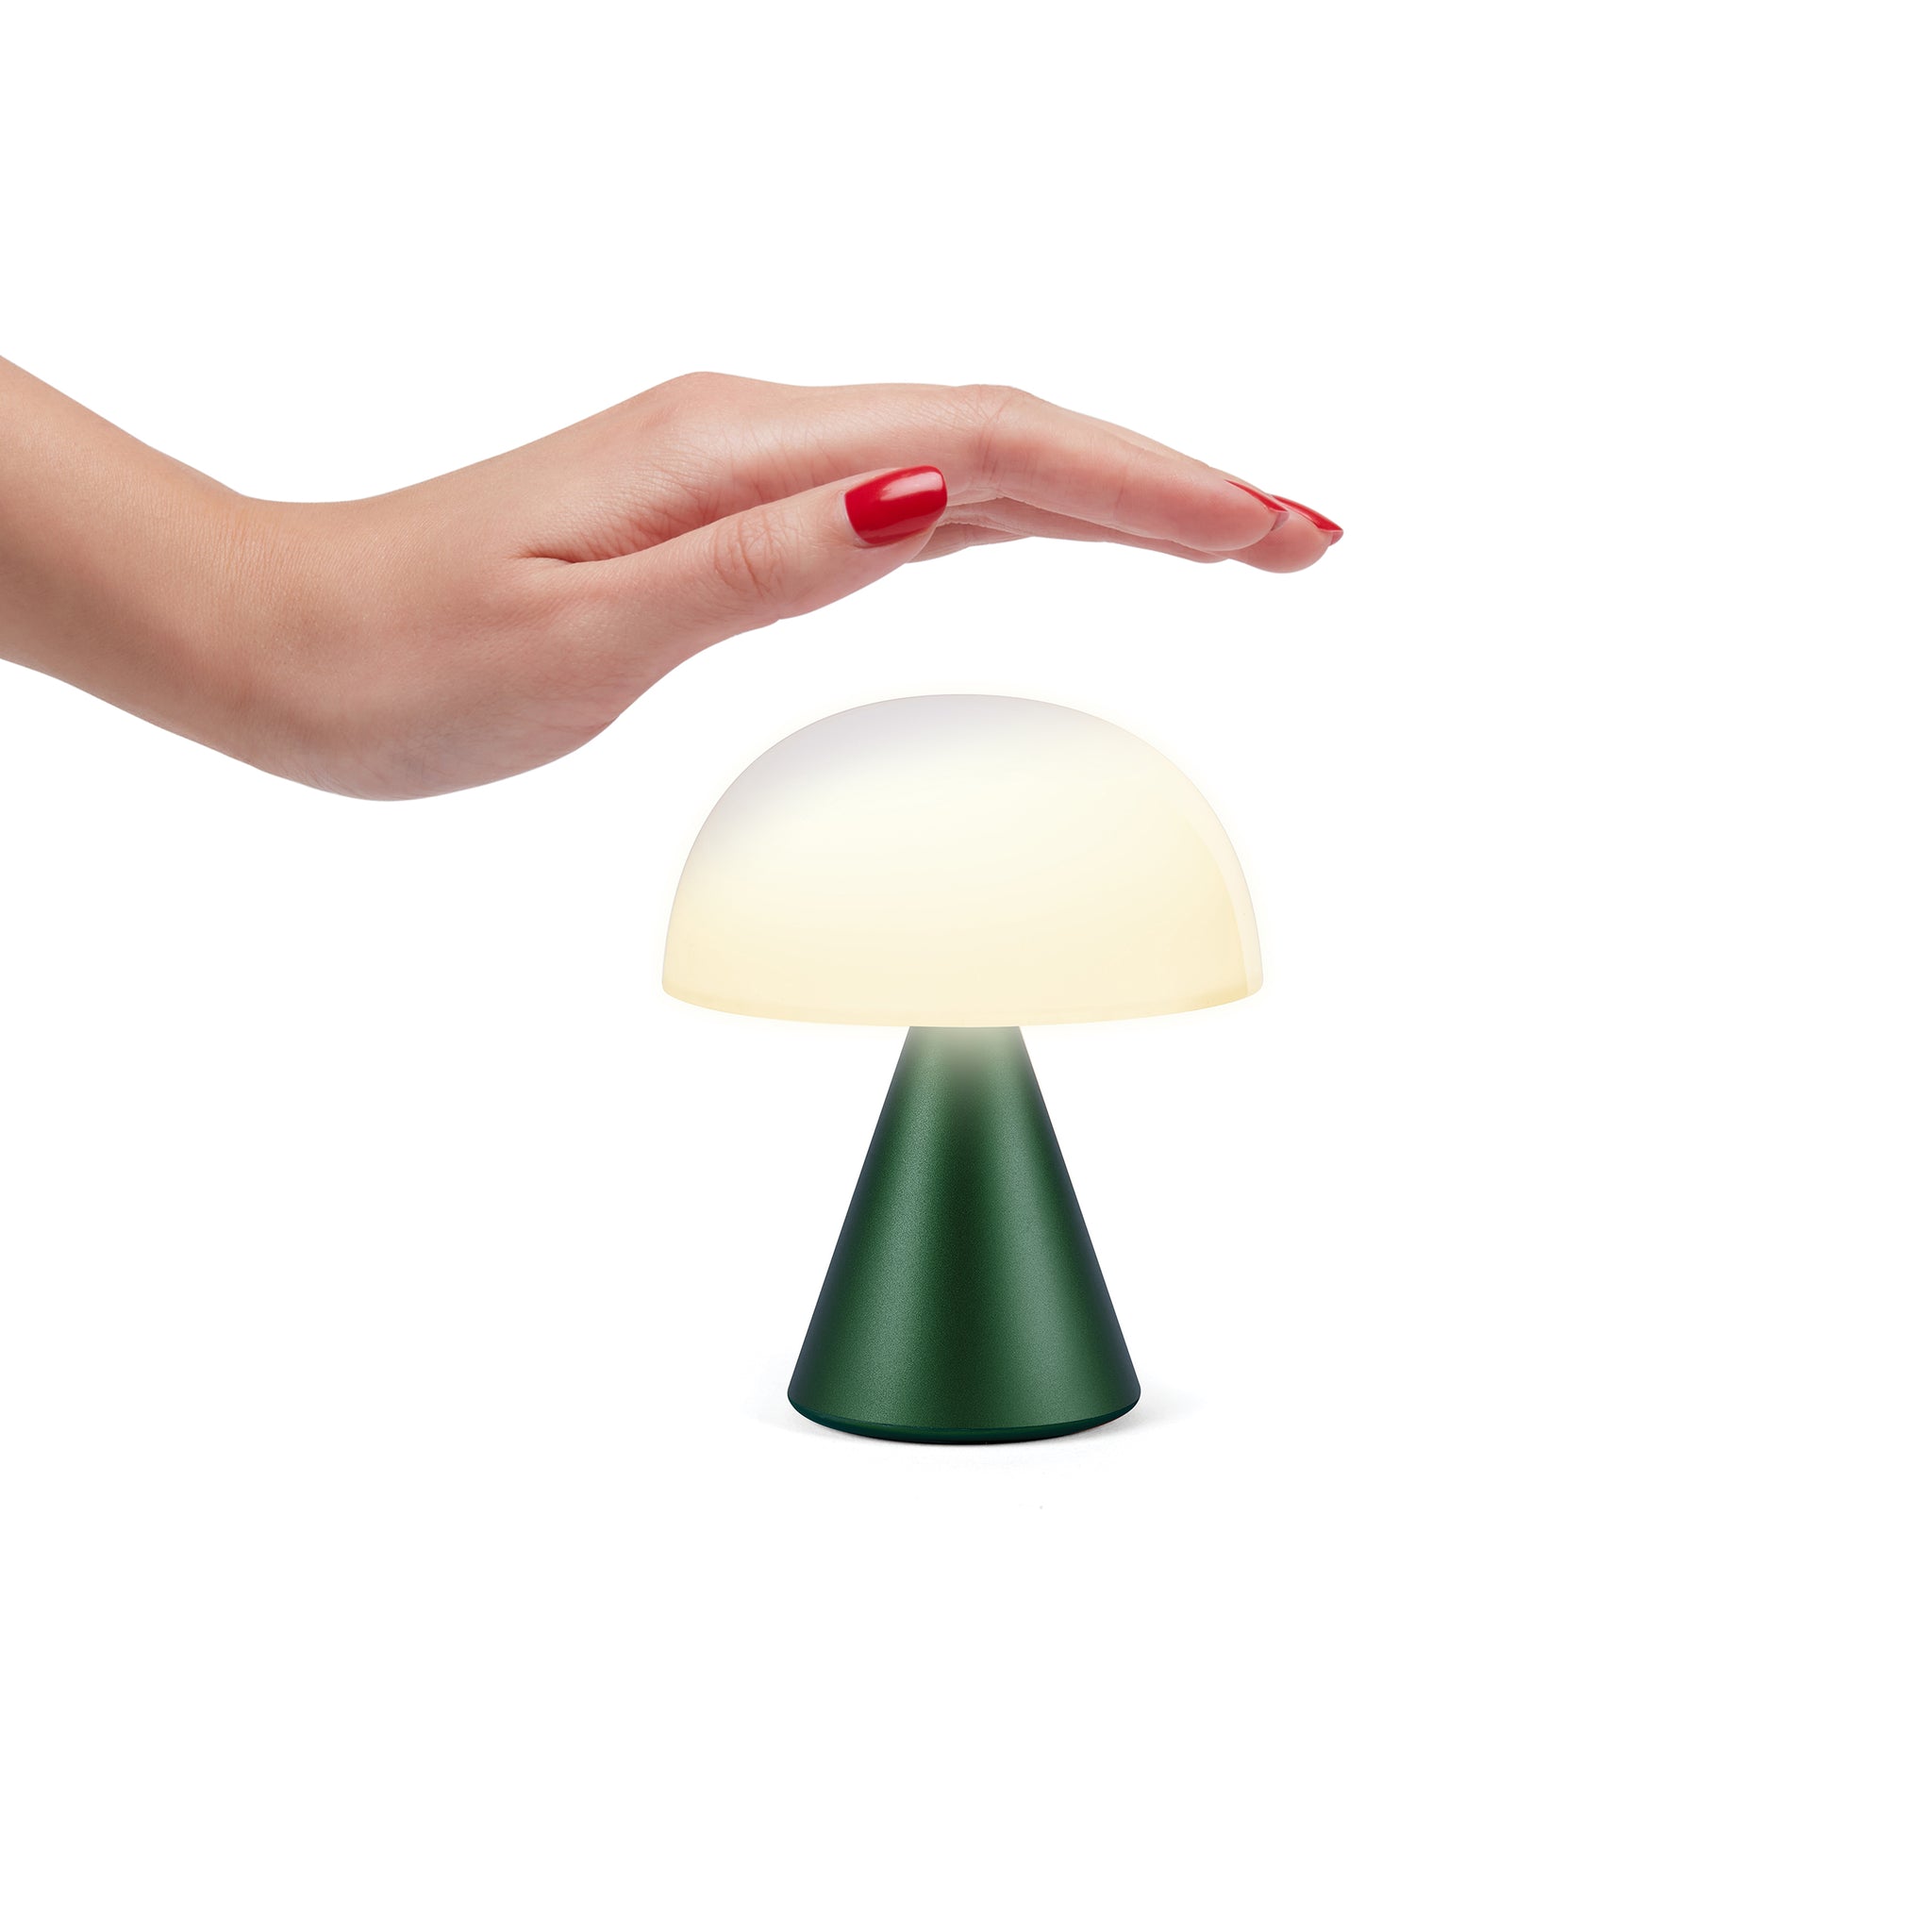 Lexon Mina Medium Donker Groen│Oplaadbare Led-Lamp│art. LH64DG1│bediening met hand boven lamp